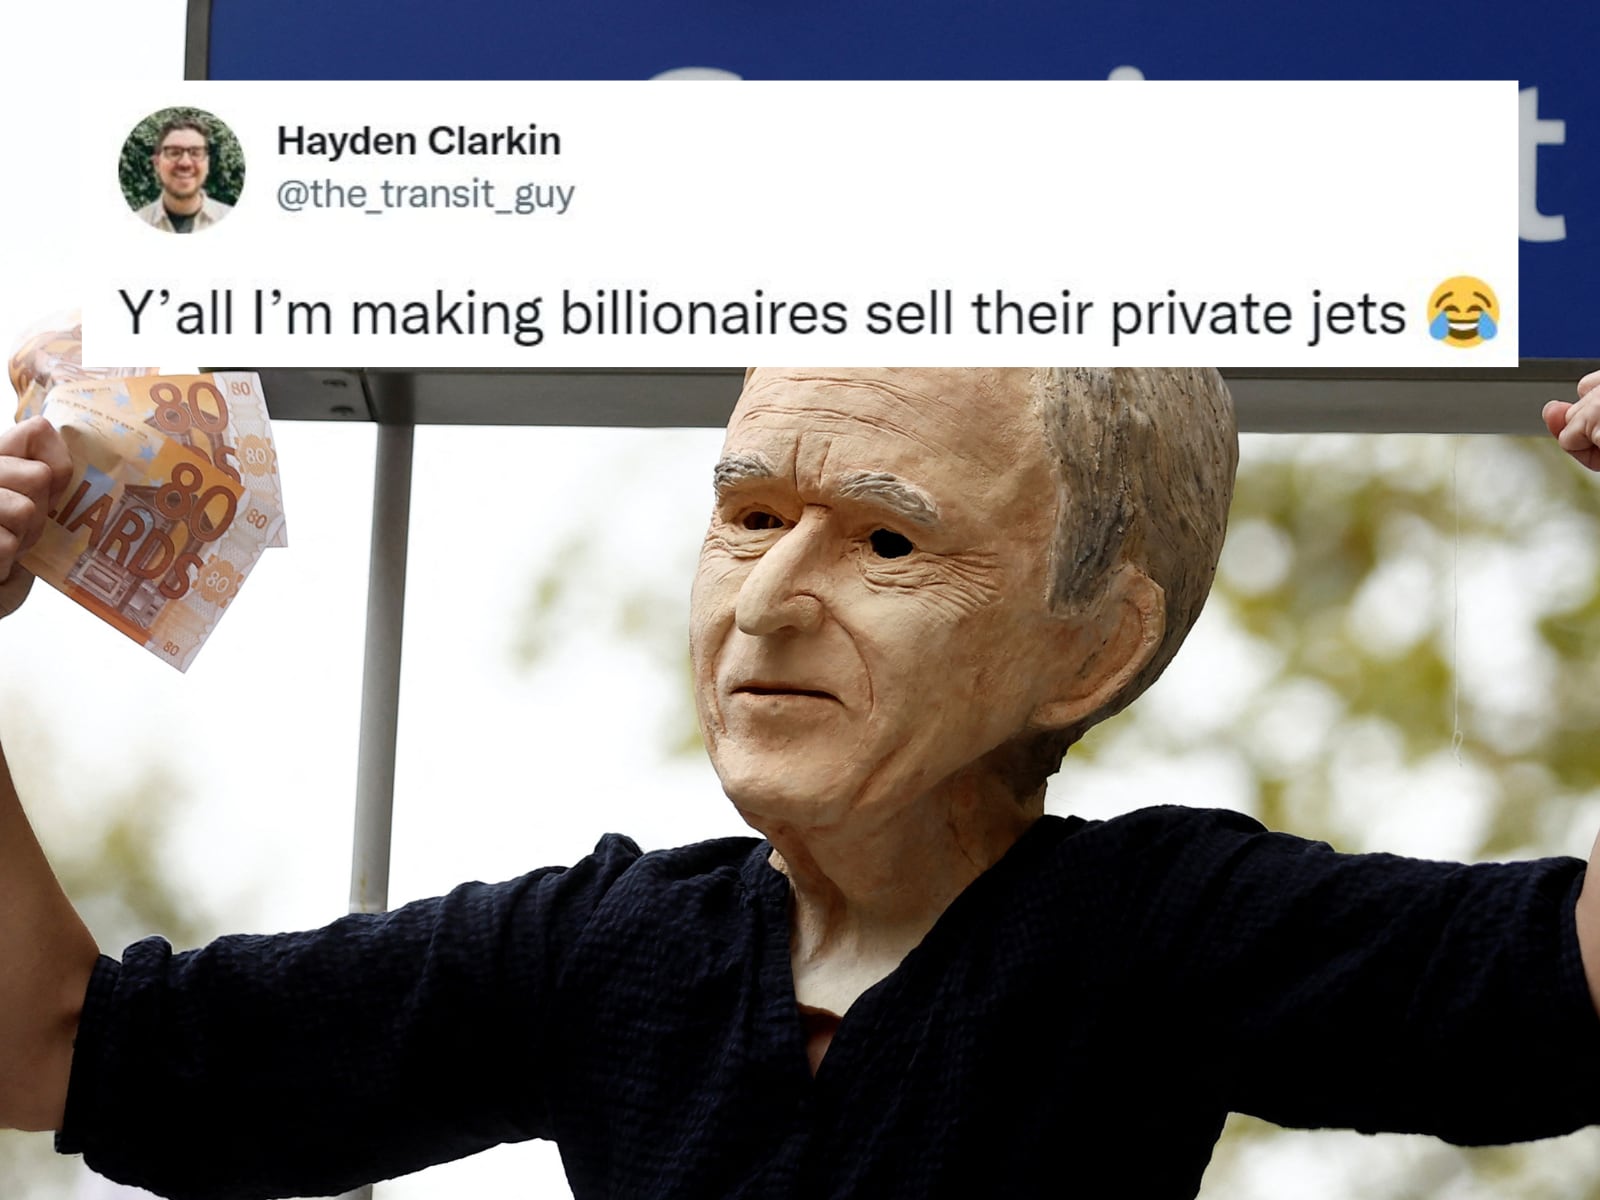 bernard arnault: Louis Vuitton CEO Bernard Arnault sells his private jet  after Twitter accounts watch him - The Economic Times